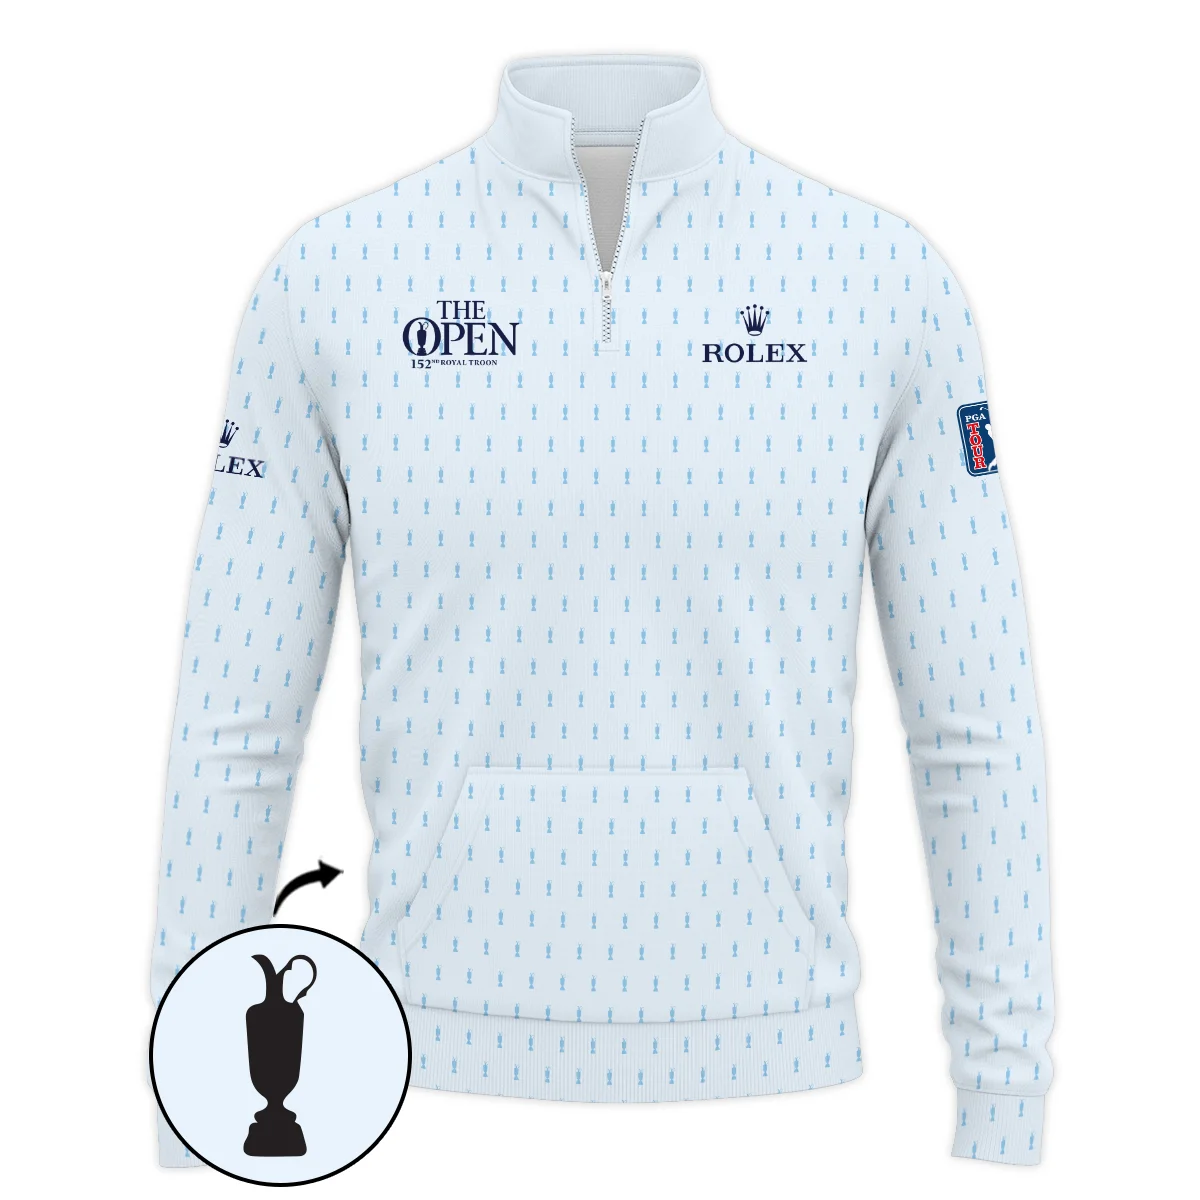 Golf Sport Light Blue Pattern Cup 152nd Open Championship Rolex Zipper Polo Shirt All Over Prints QTTOP160624A01ROXZPL